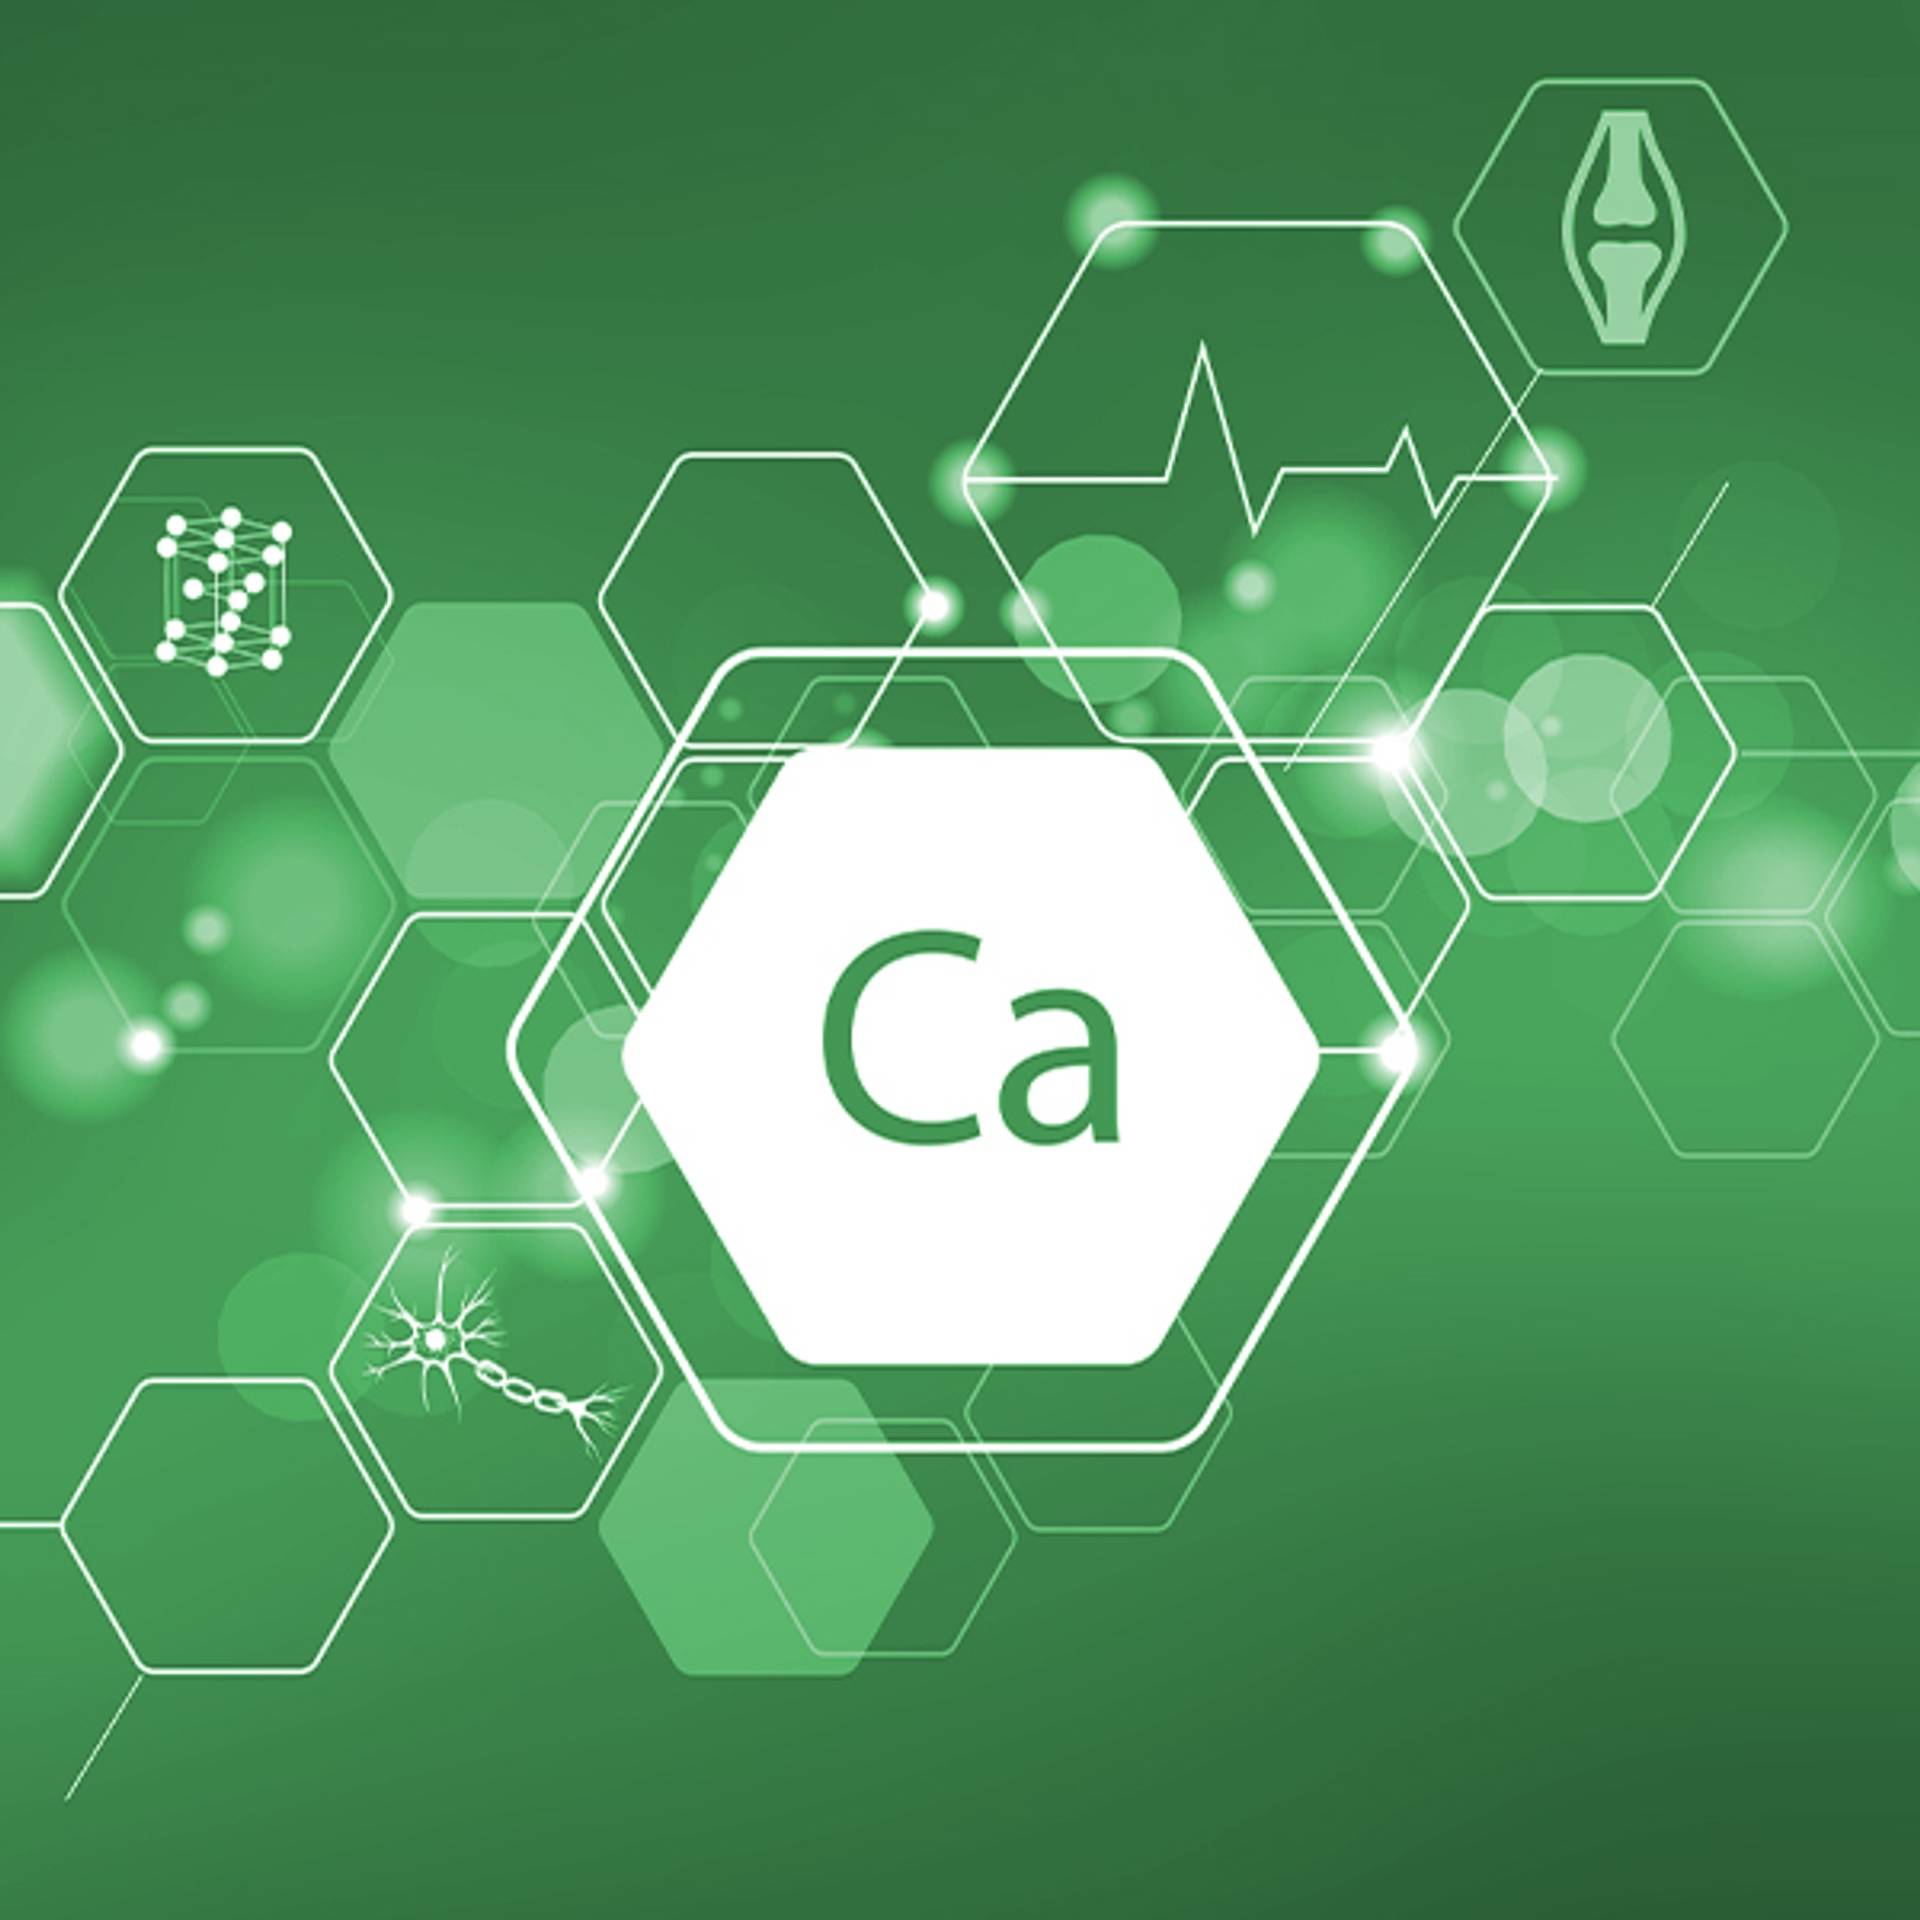 Calcium für jeden Tag: So einfach können Sie Ihren Bedarf berechnen und decken